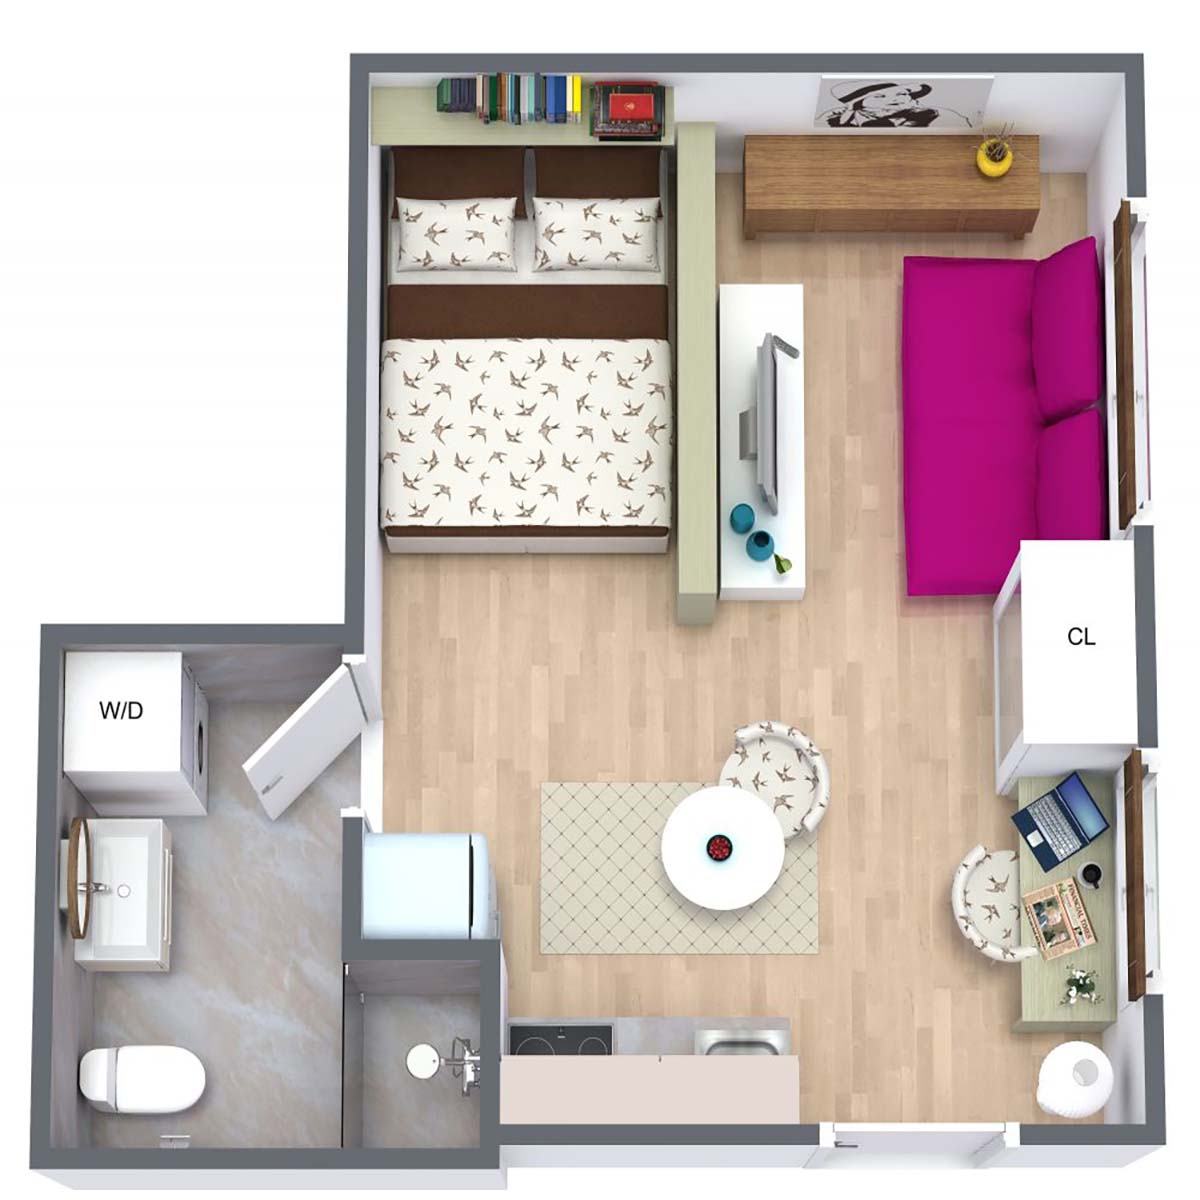 Sắp xếp mặt bằng hợp lý sẽ giúp căn hộ của bạn trở nên gọn gàng hơn.

Nguồn: Room Sketcher